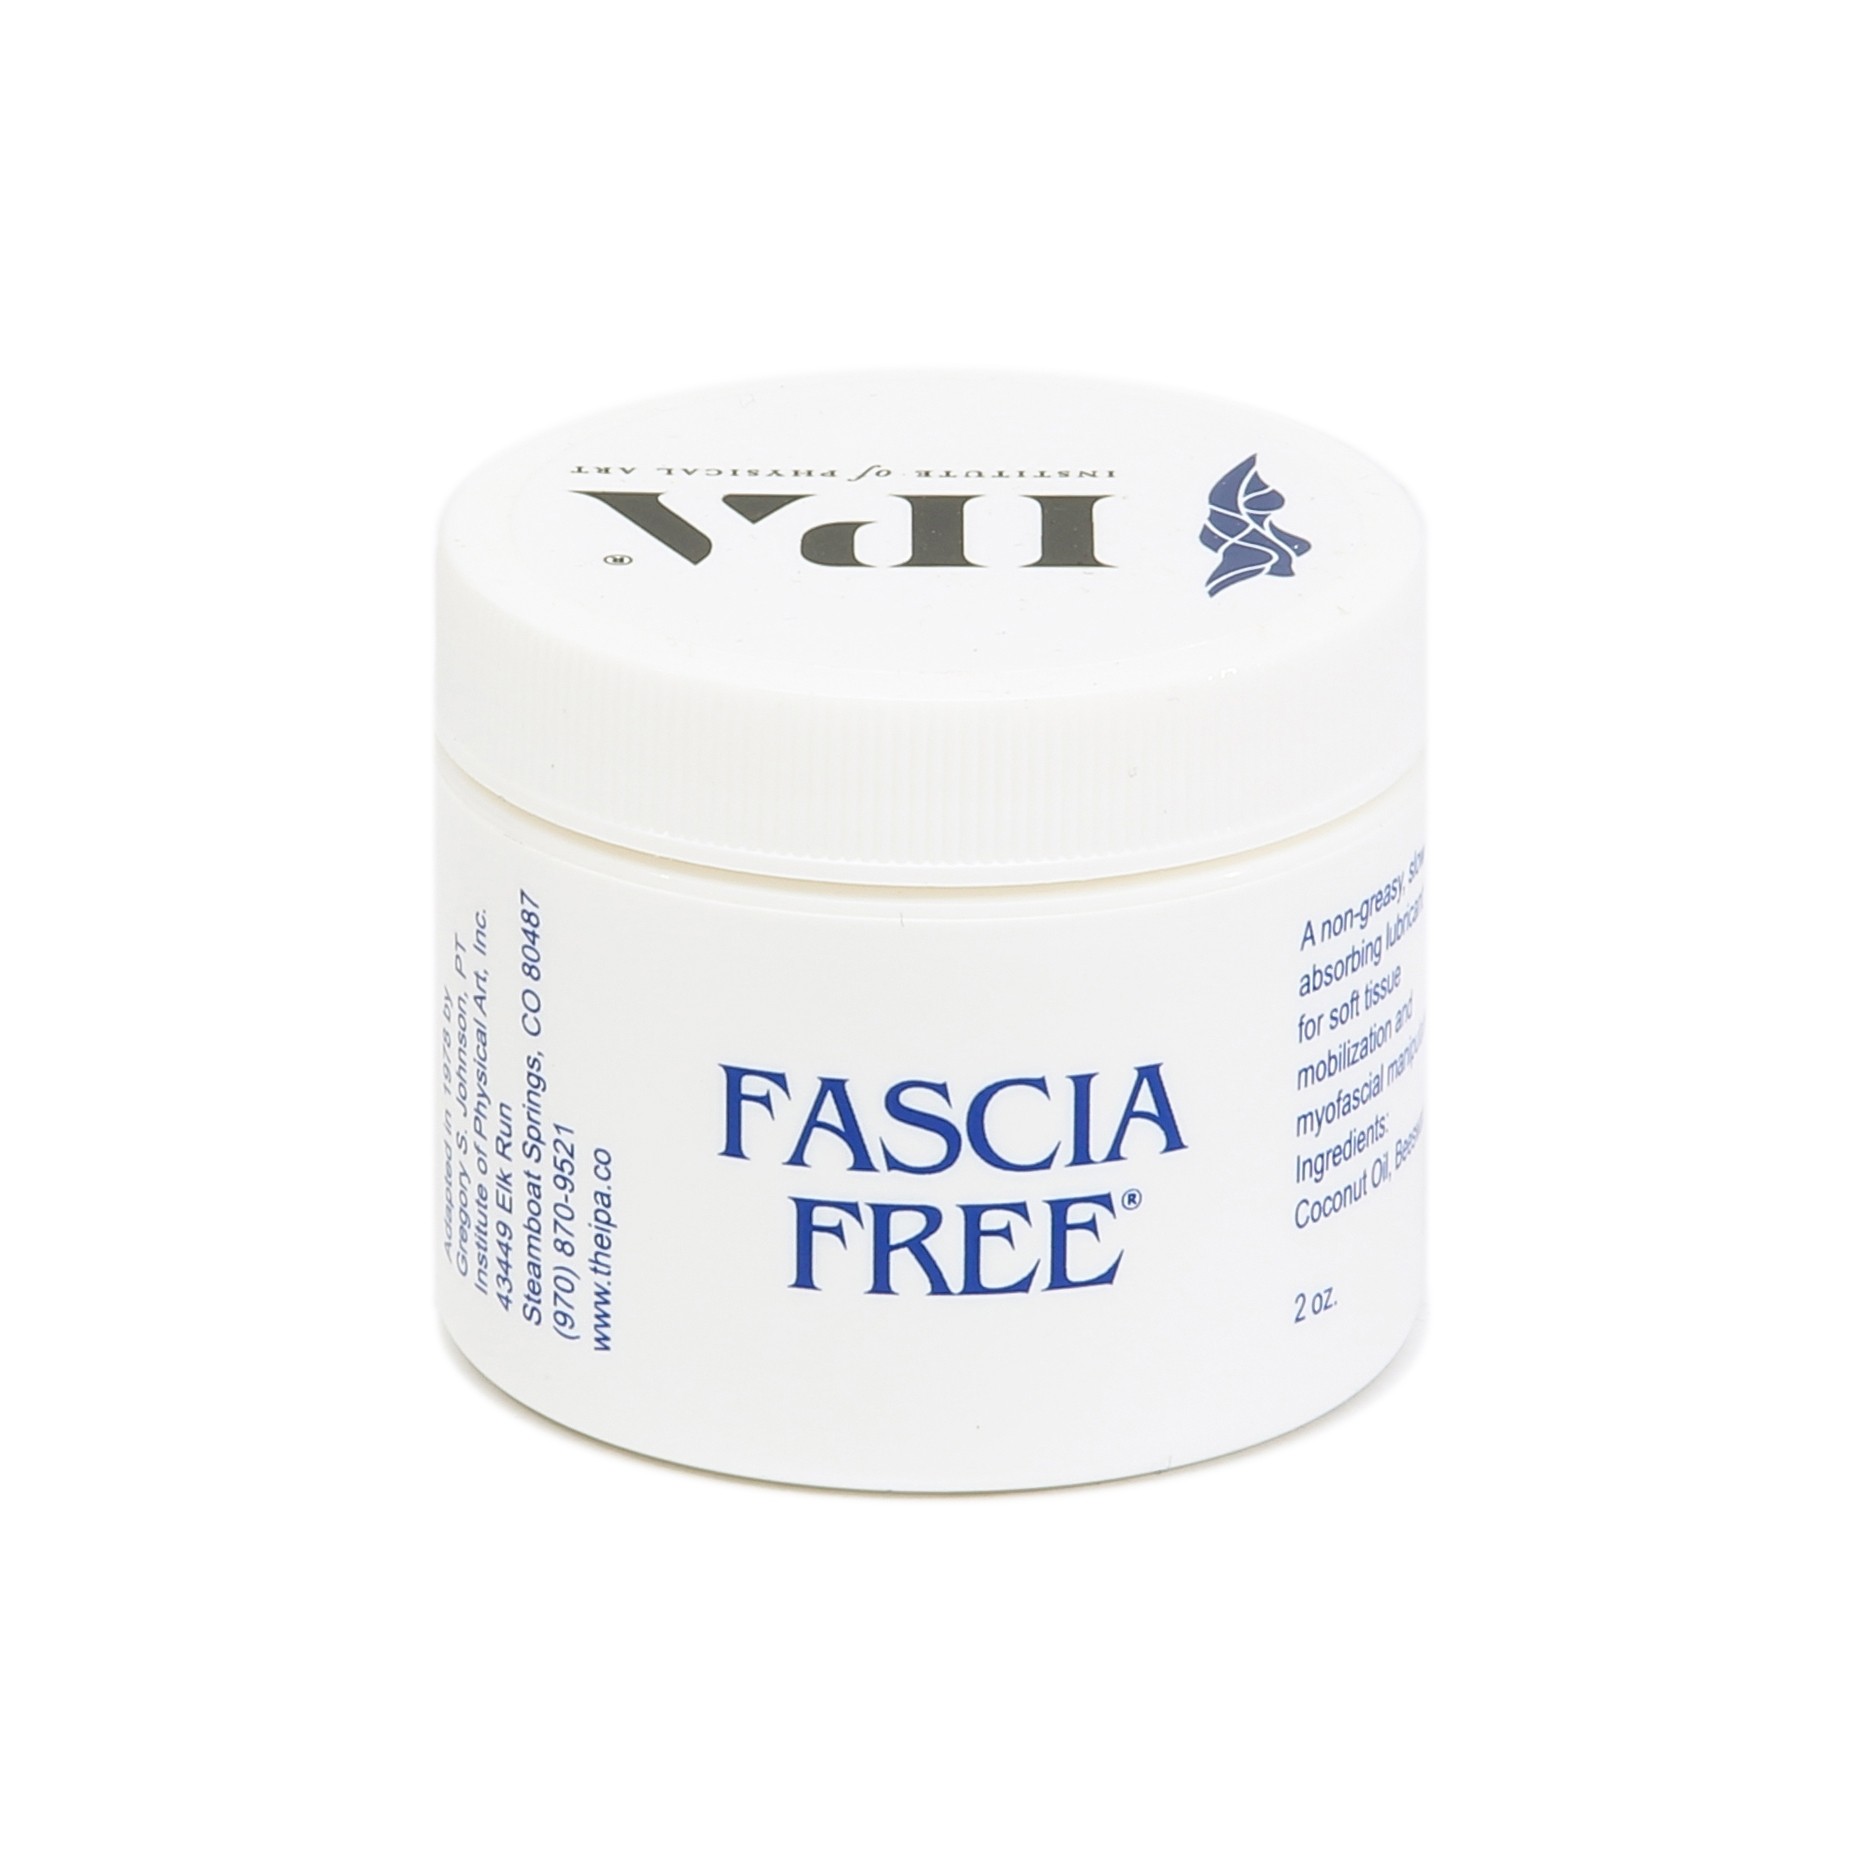 02.Fascia Free - 2 oz